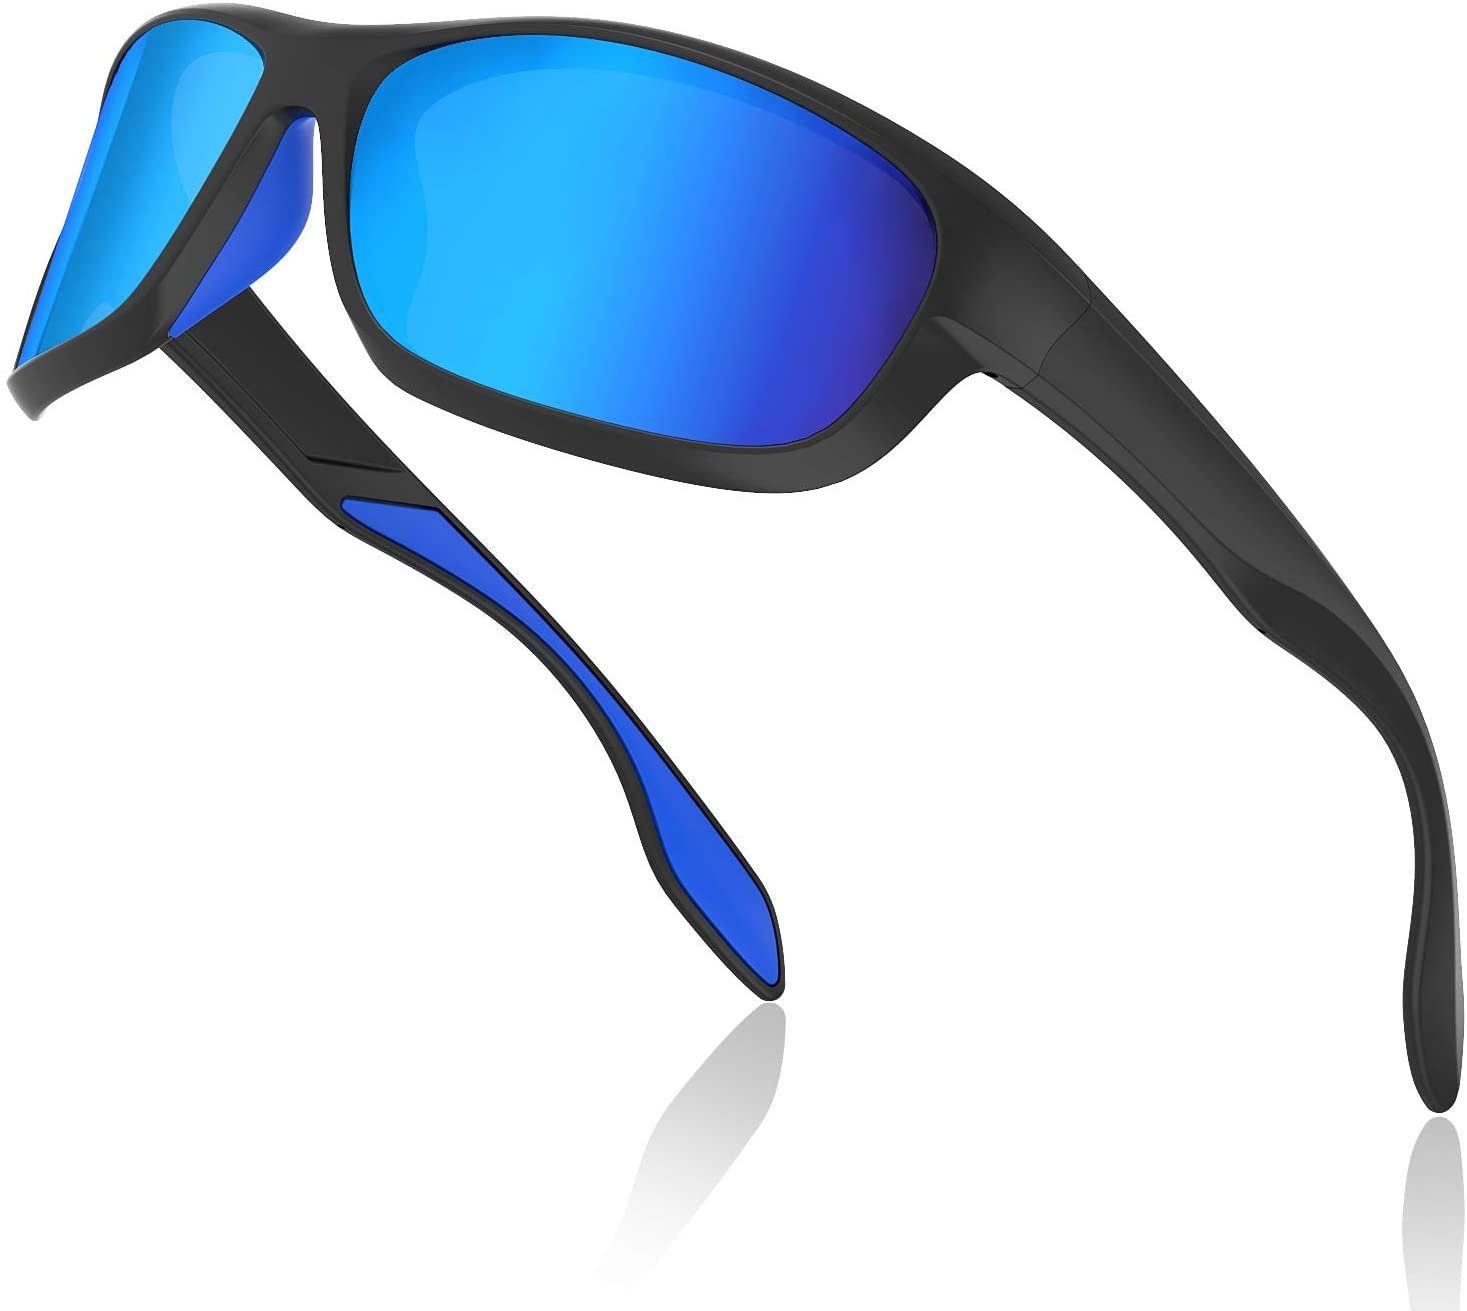 zum Fahren Angeln Glof Baseball Laufen CE Zertifiziert TR90 Unbreakable Frame Polarisierte Sport Sonnenbrille Fahrradbrille für Männer Frauen mit 3 oder 5 Wechselobjektiven Queshark Fahrradbrille